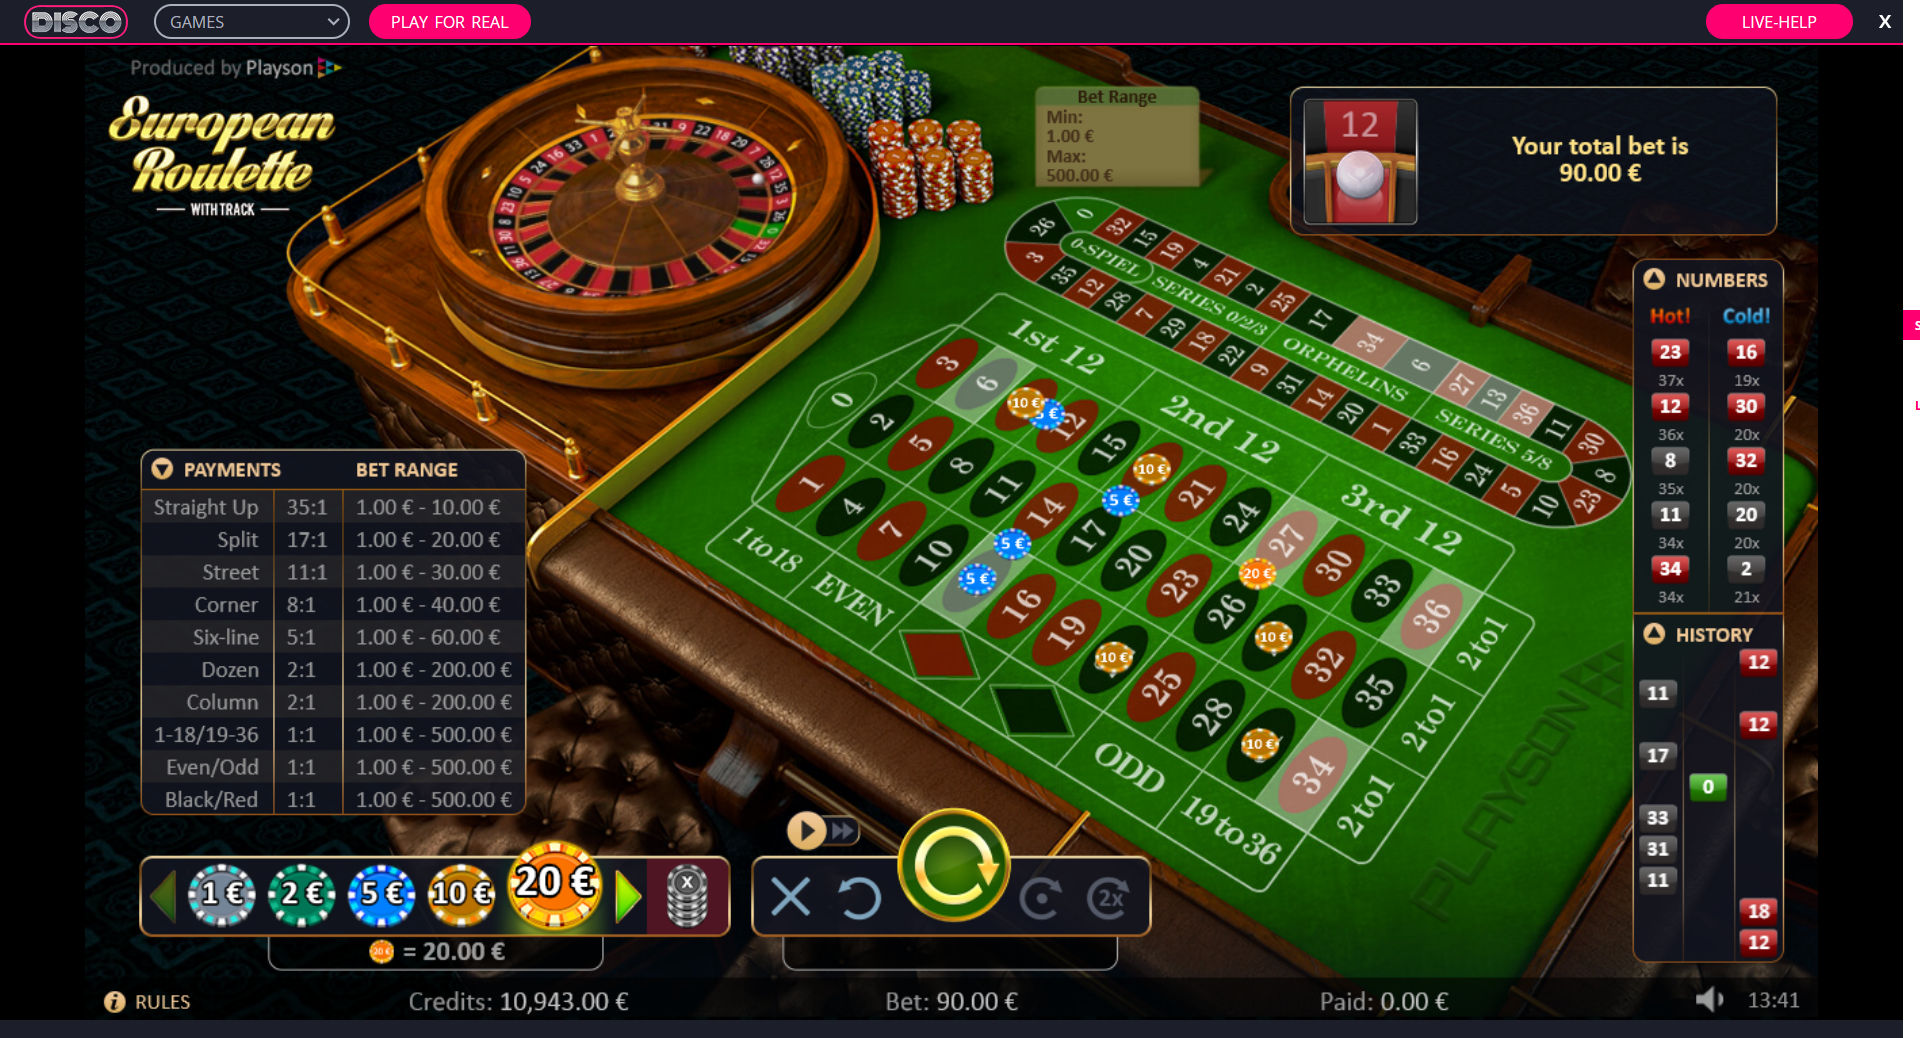 CasinoDisco Casino Games